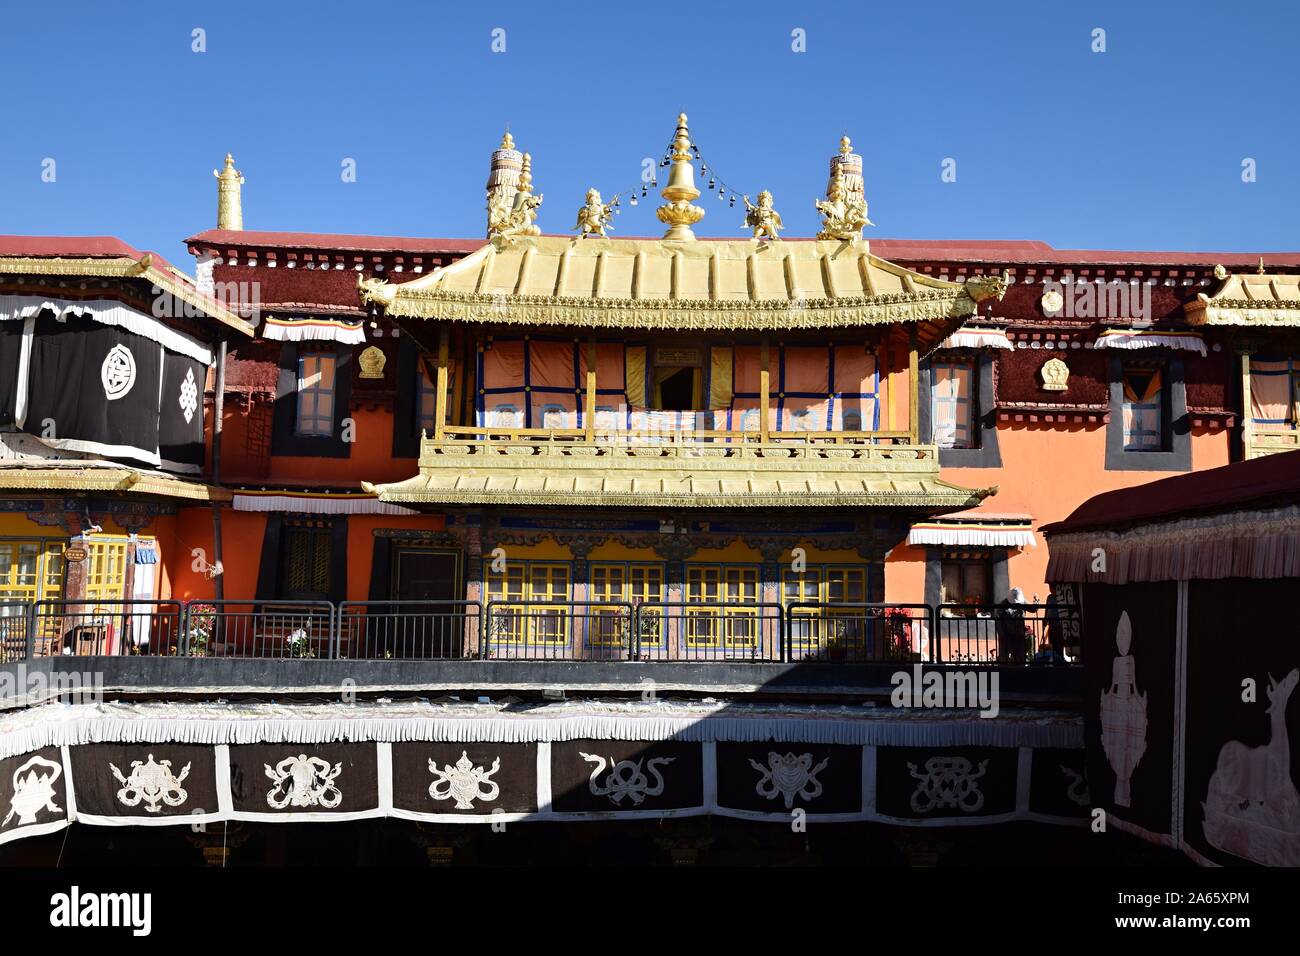 Jokhang Tempio è un tempio buddista in Piazza Barkhor a Lhasa, in Tibet. Tibetani ritengono questo tempio come il più sacro e importante tempio in Tibet. Foto Stock